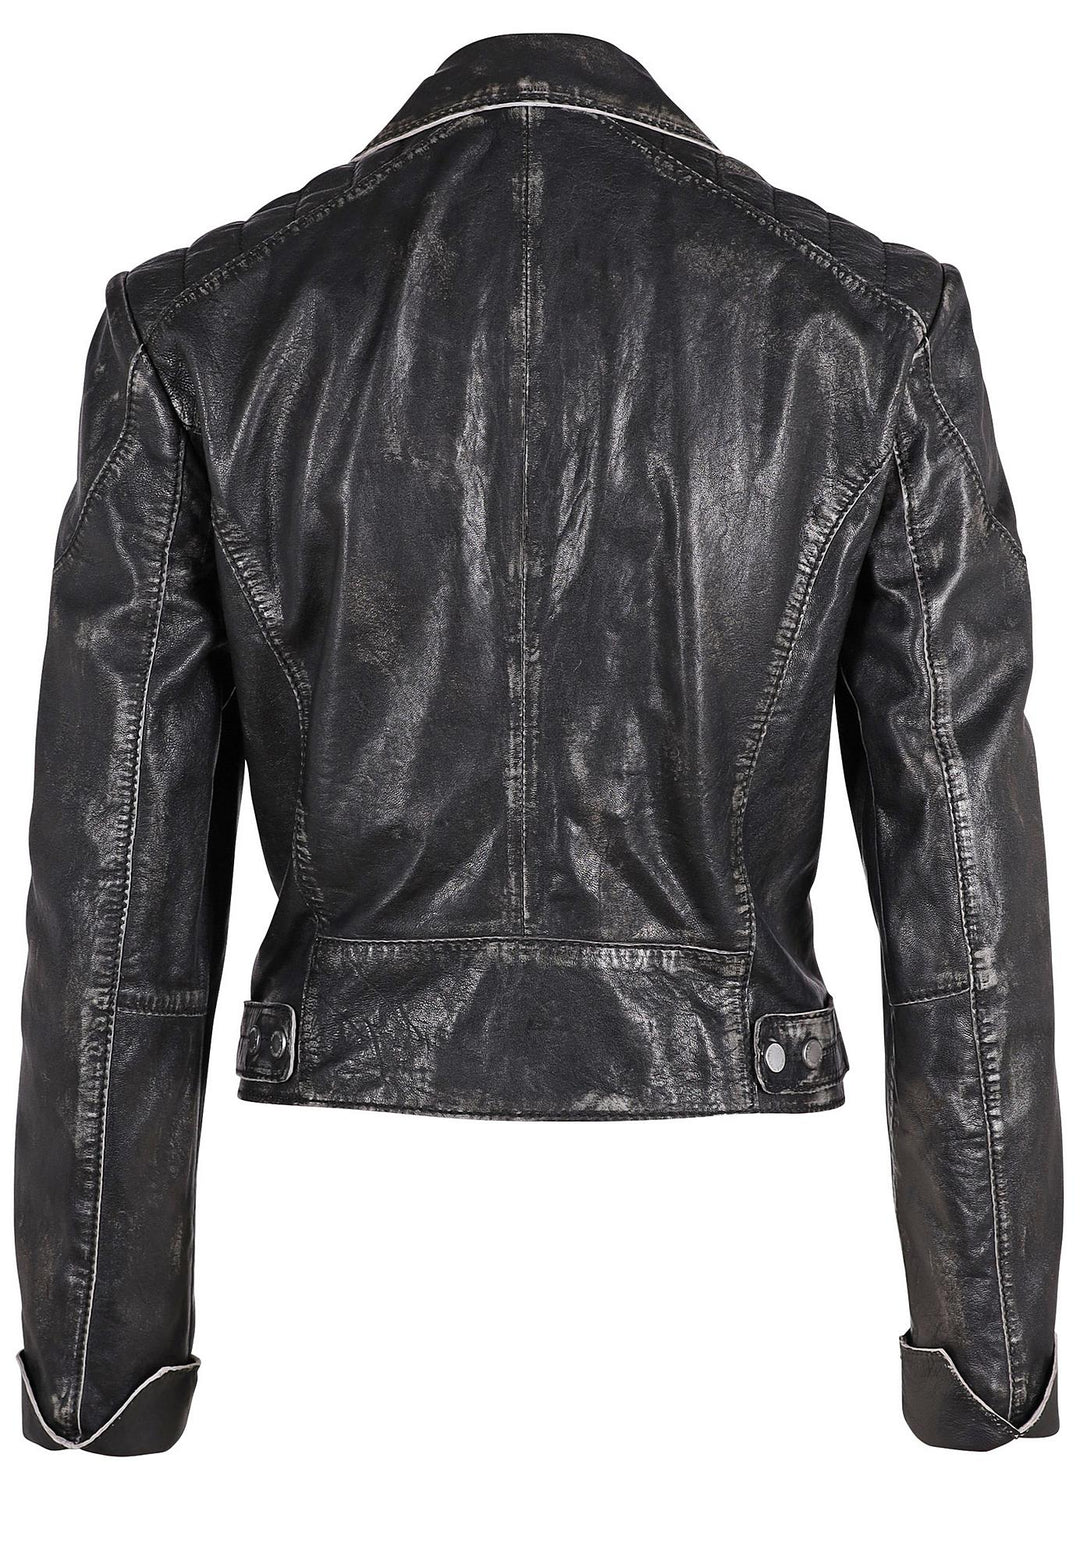 Reanon RF Leather Jacket - Vintage Black